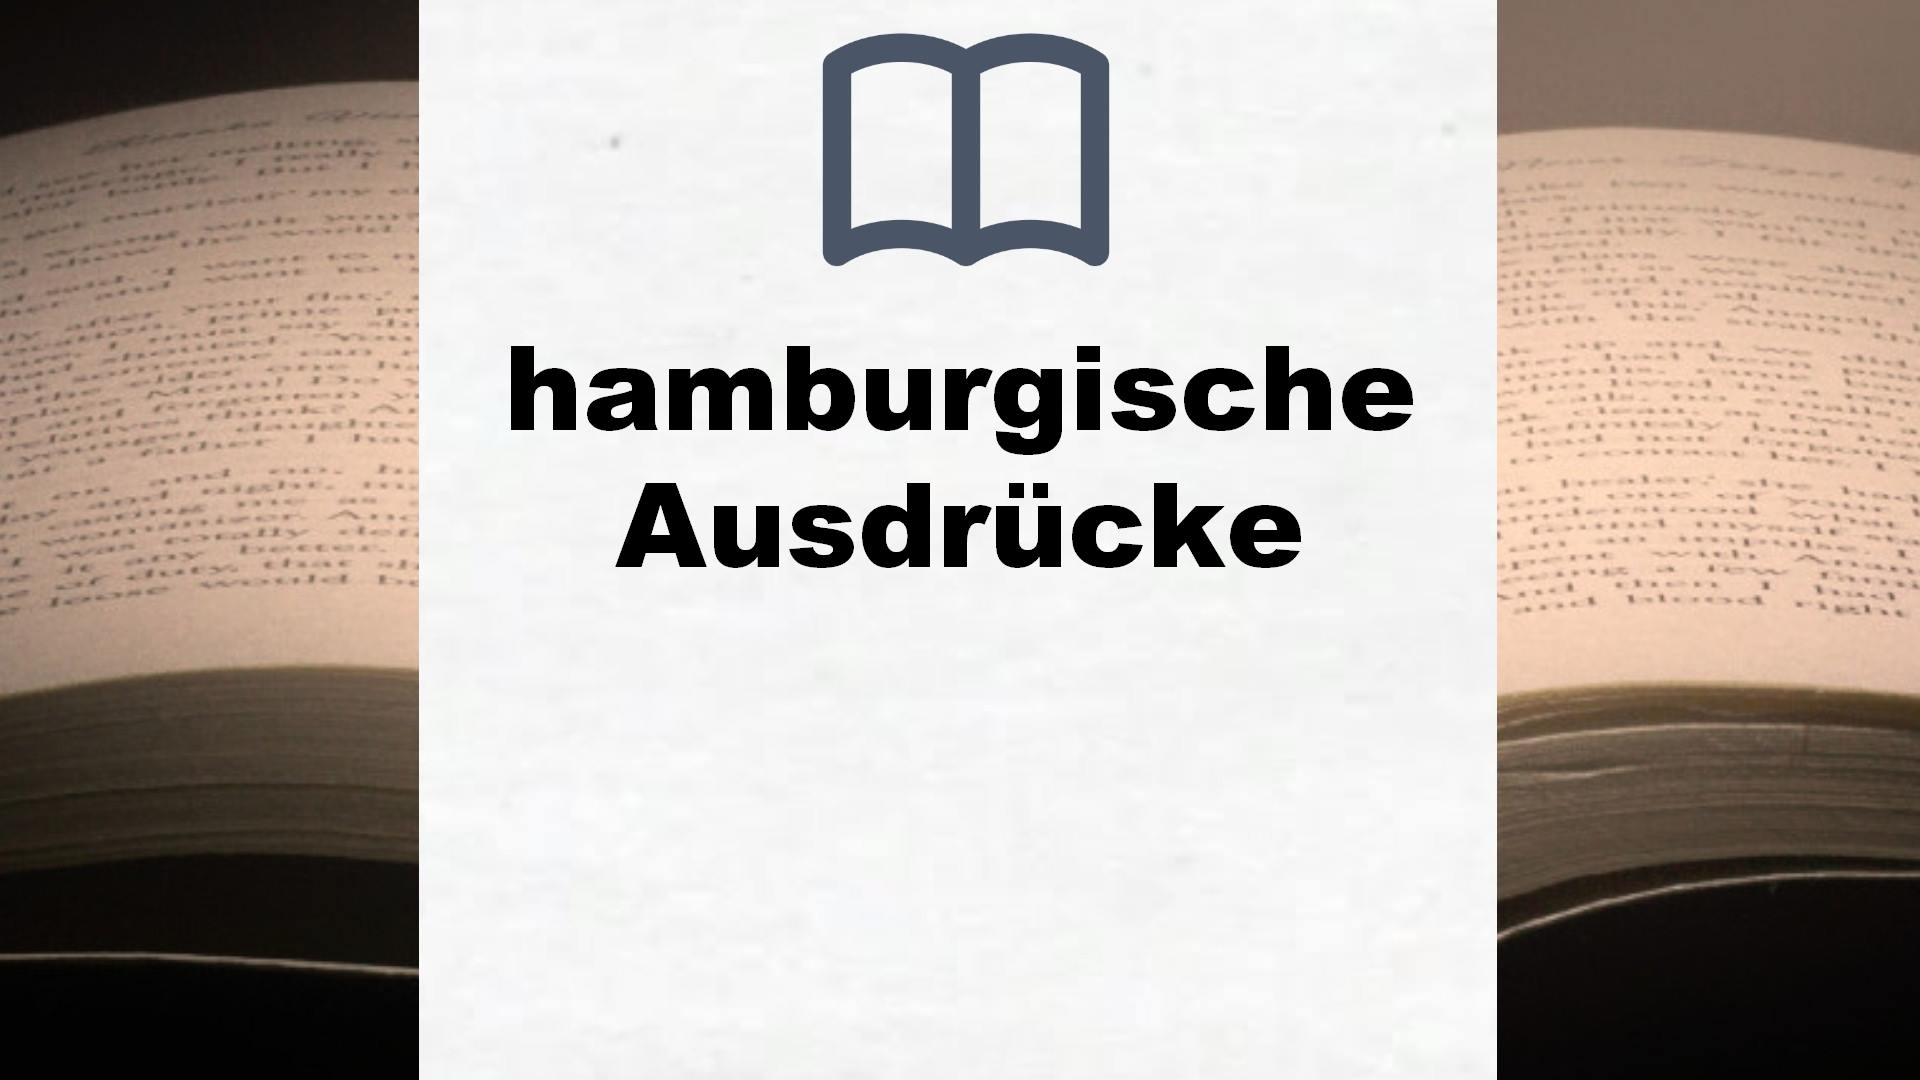 Bücher über hamburgische Ausdrücke